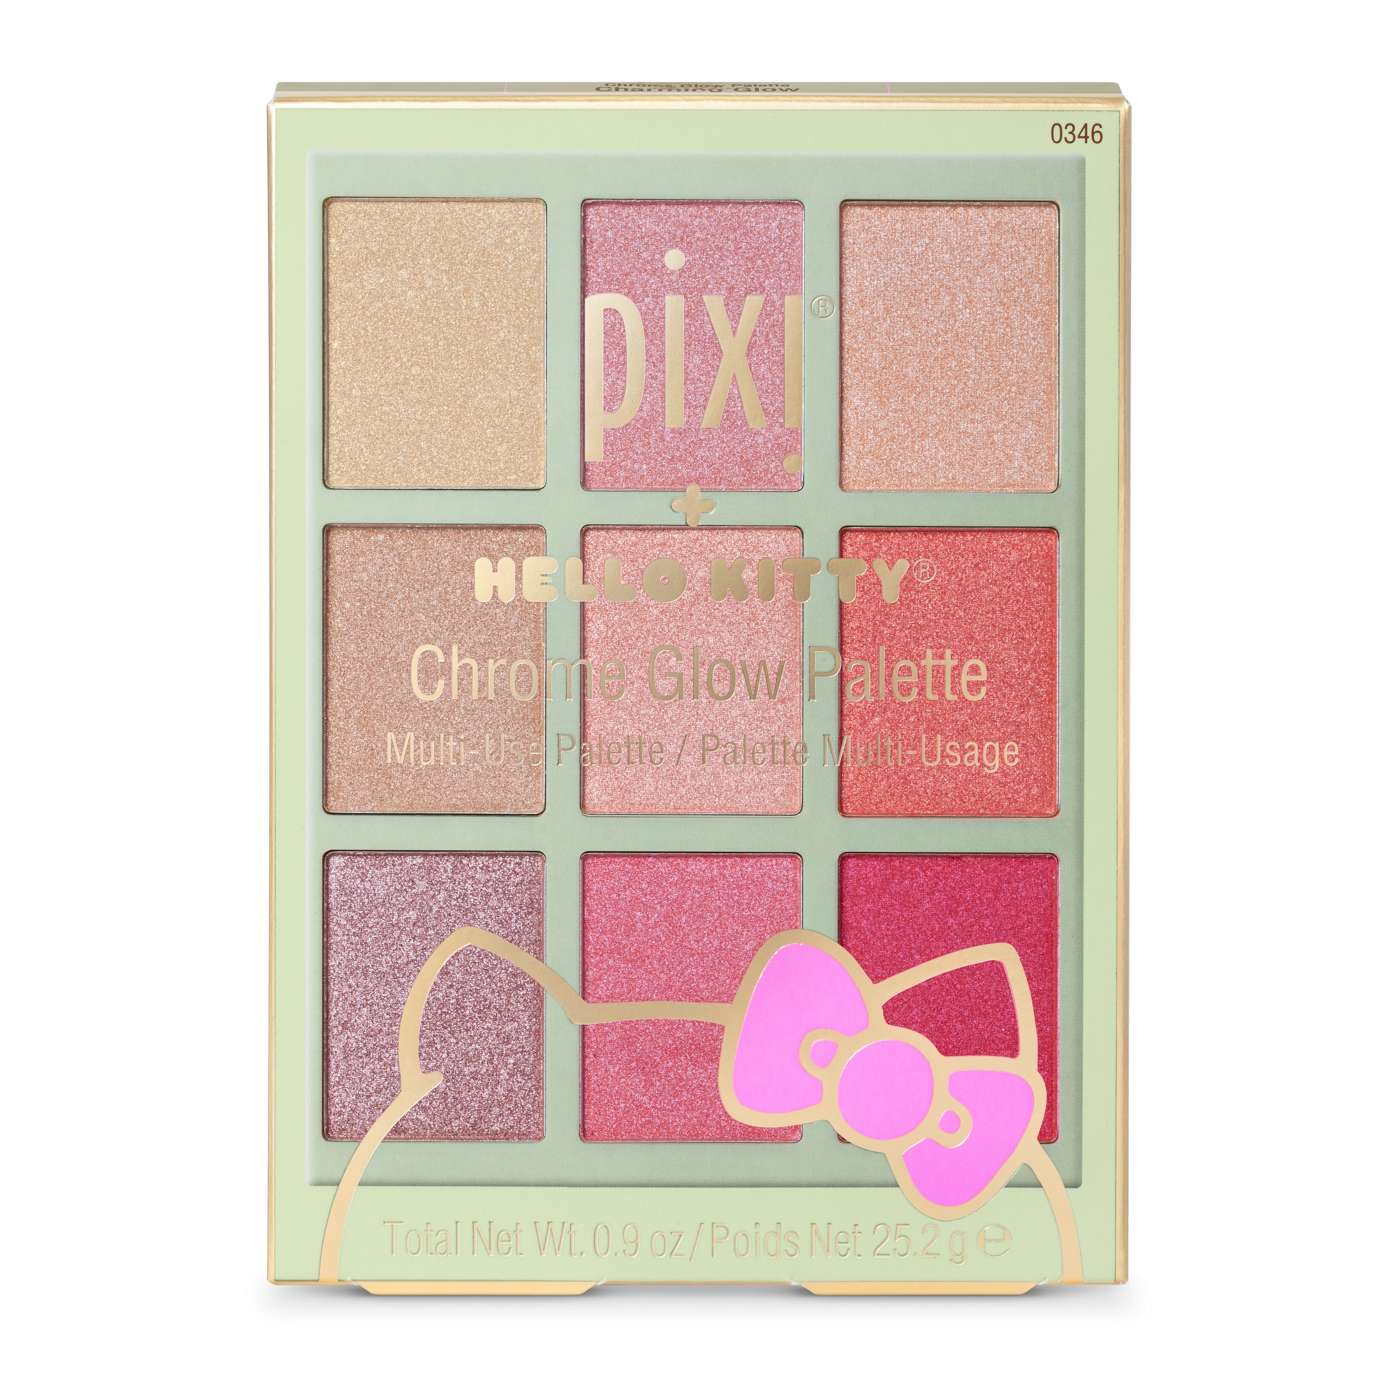 Pixi Hello Kitty Chrome Glow Palette; image 1 of 3